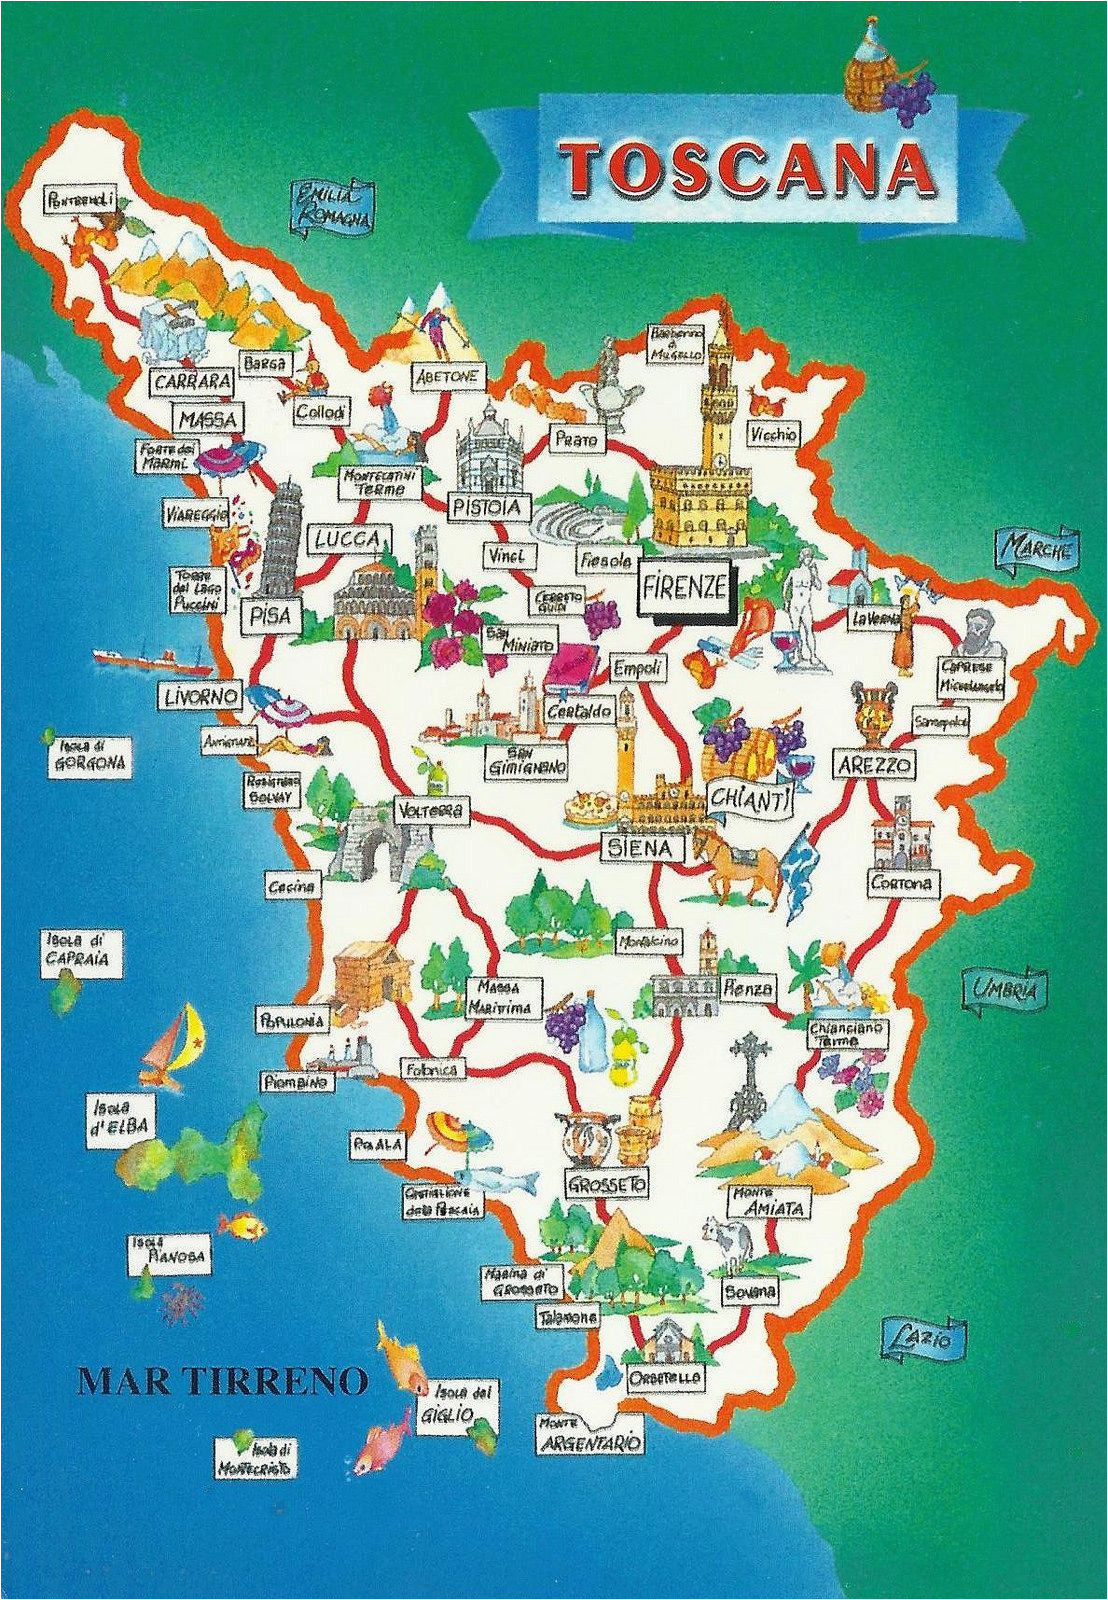 toscana map italy map of tuscany italy tuscany map toscana italy